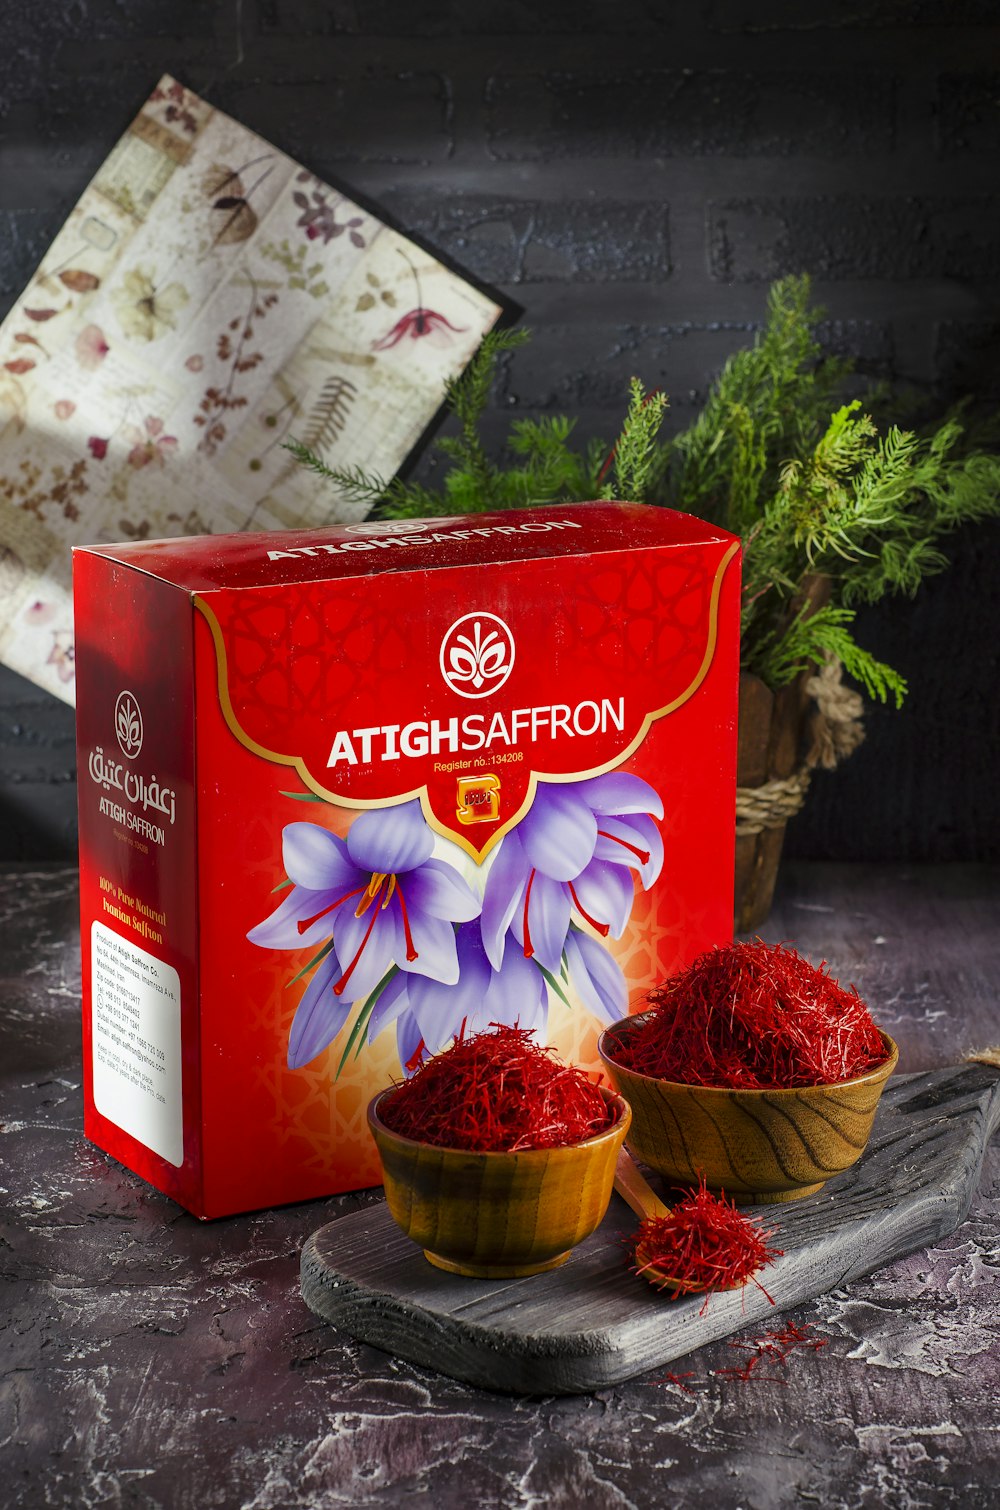 a box of saffron powder next to a bowl of saffron